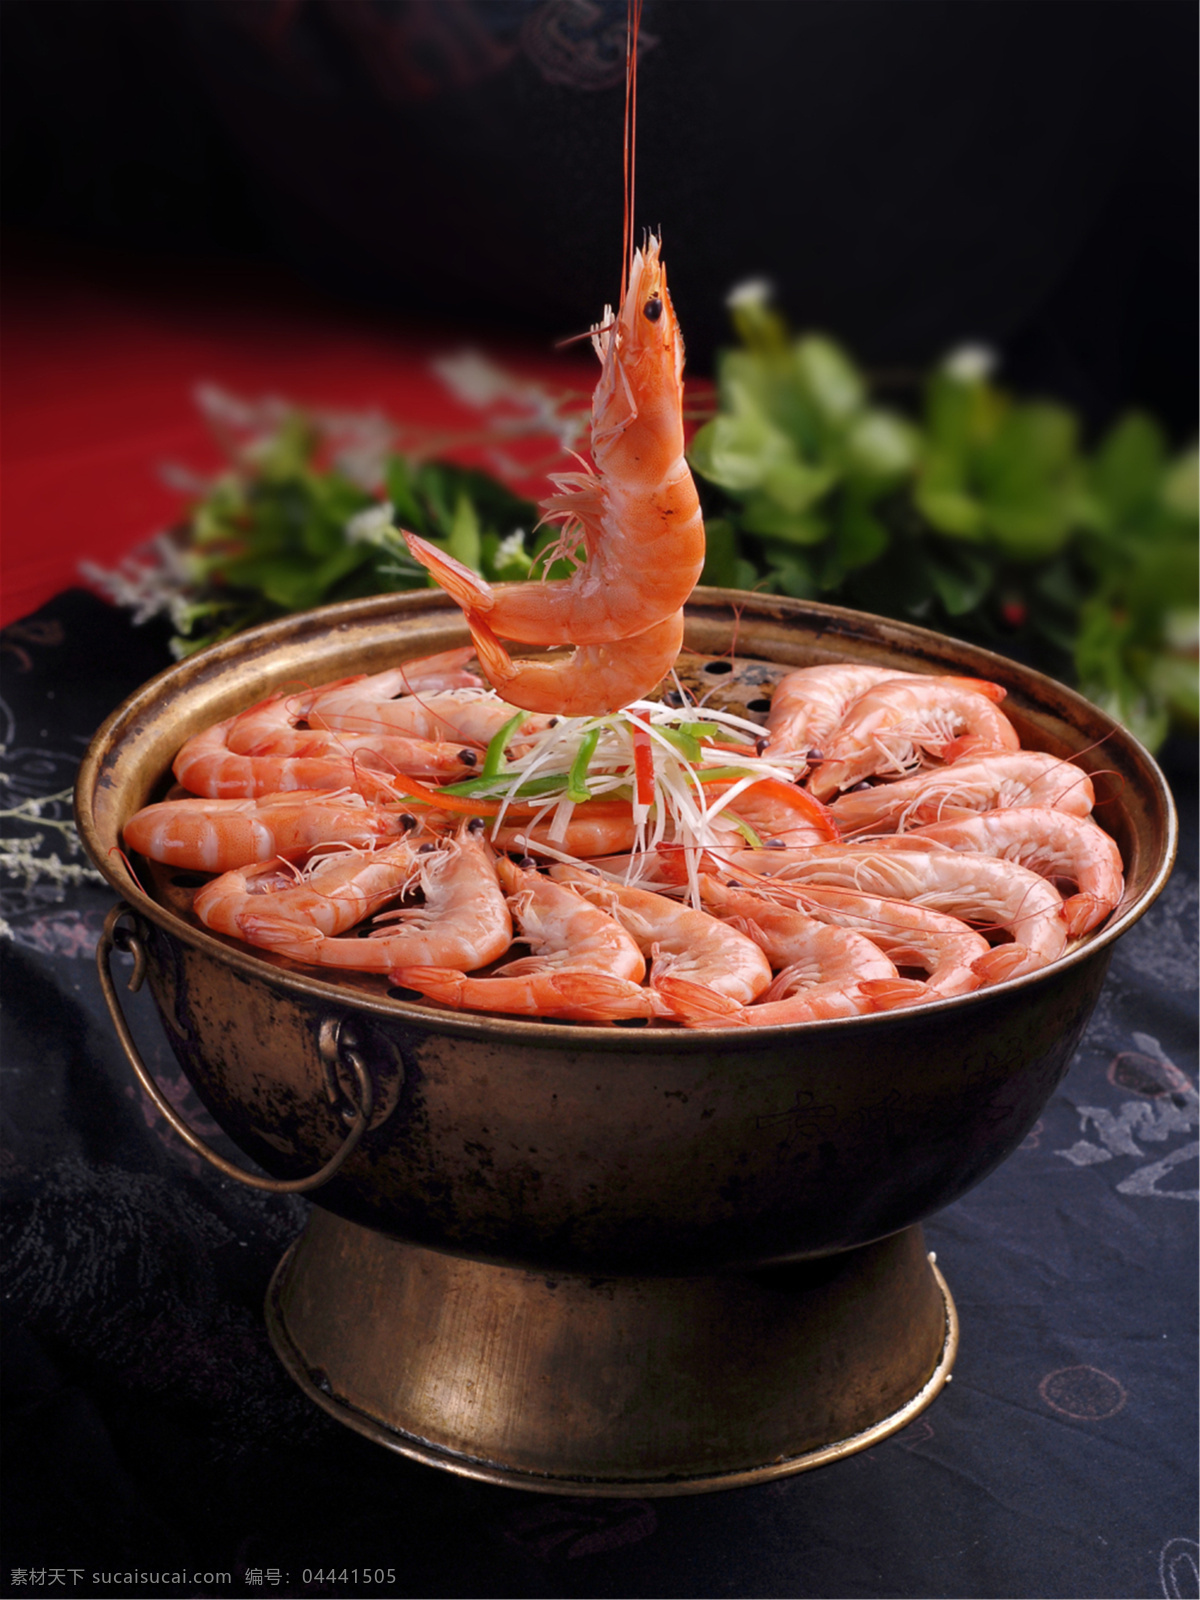 开桑拿虾时价 美食 传统美食 餐饮美食 高清菜谱用图